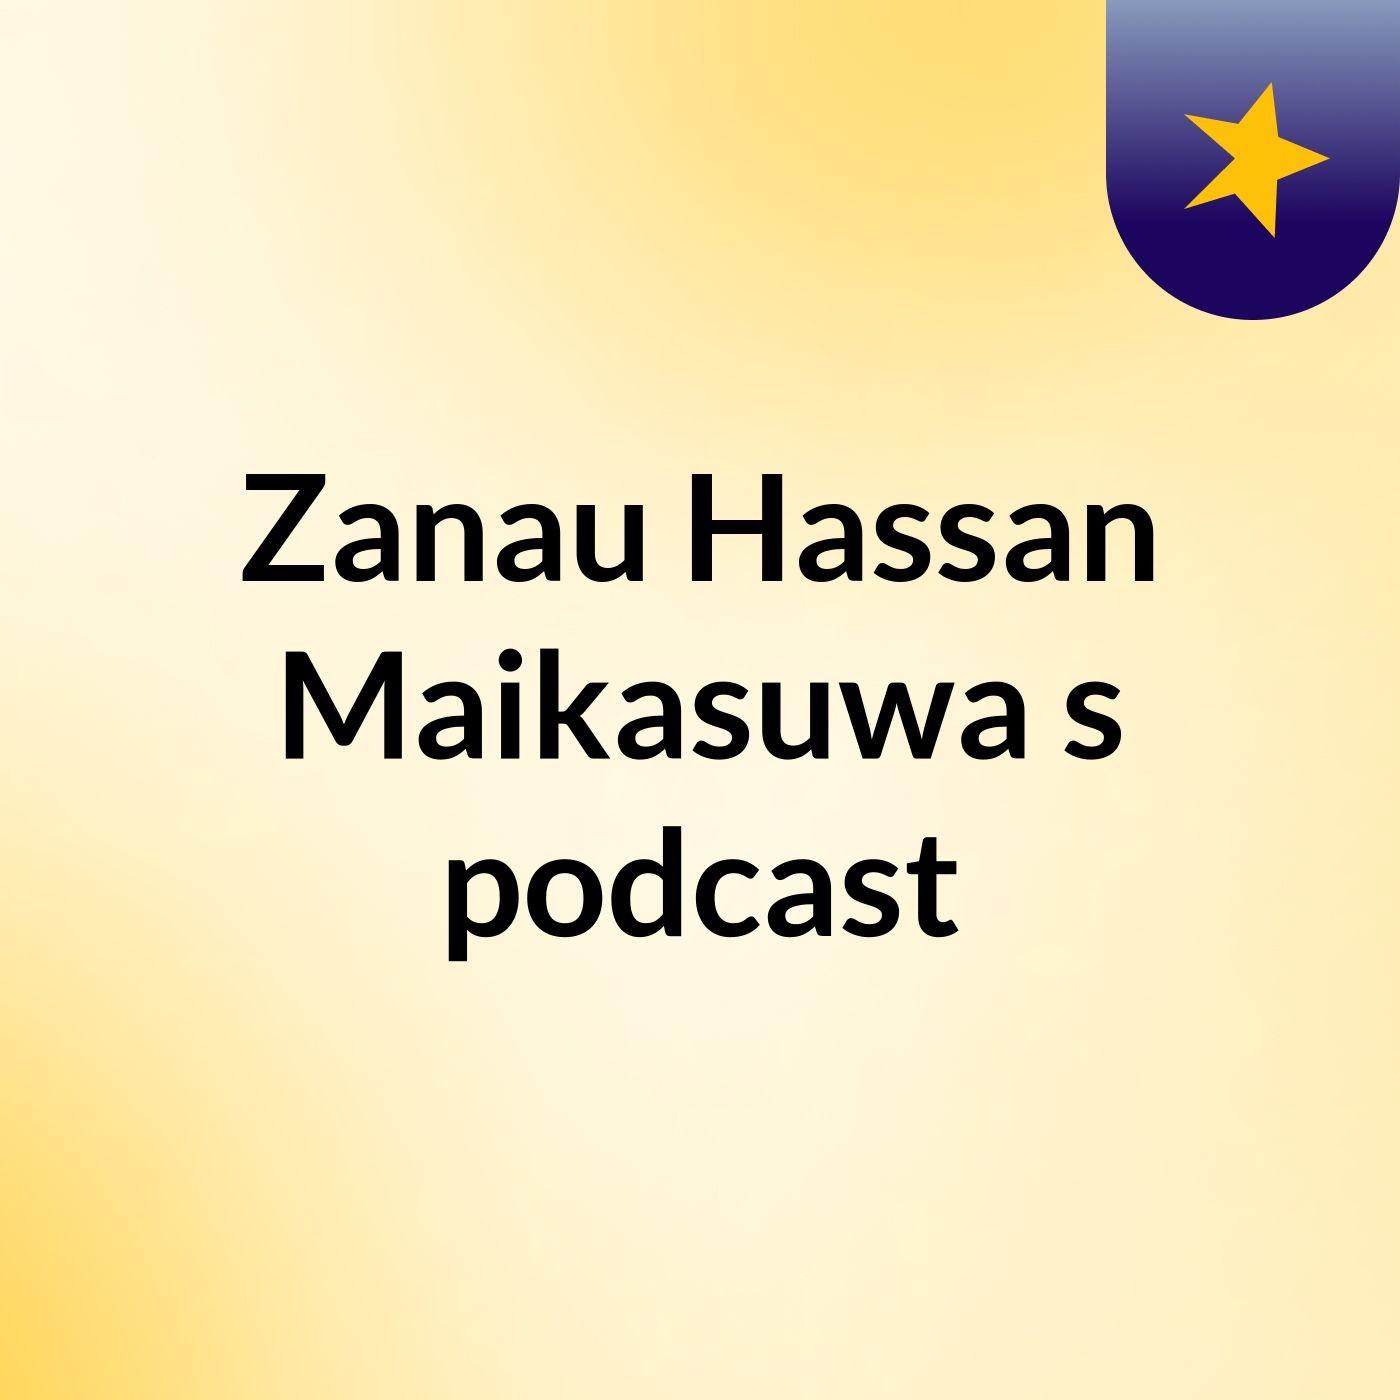 Zanau Hassan Maikasuwa's podcast